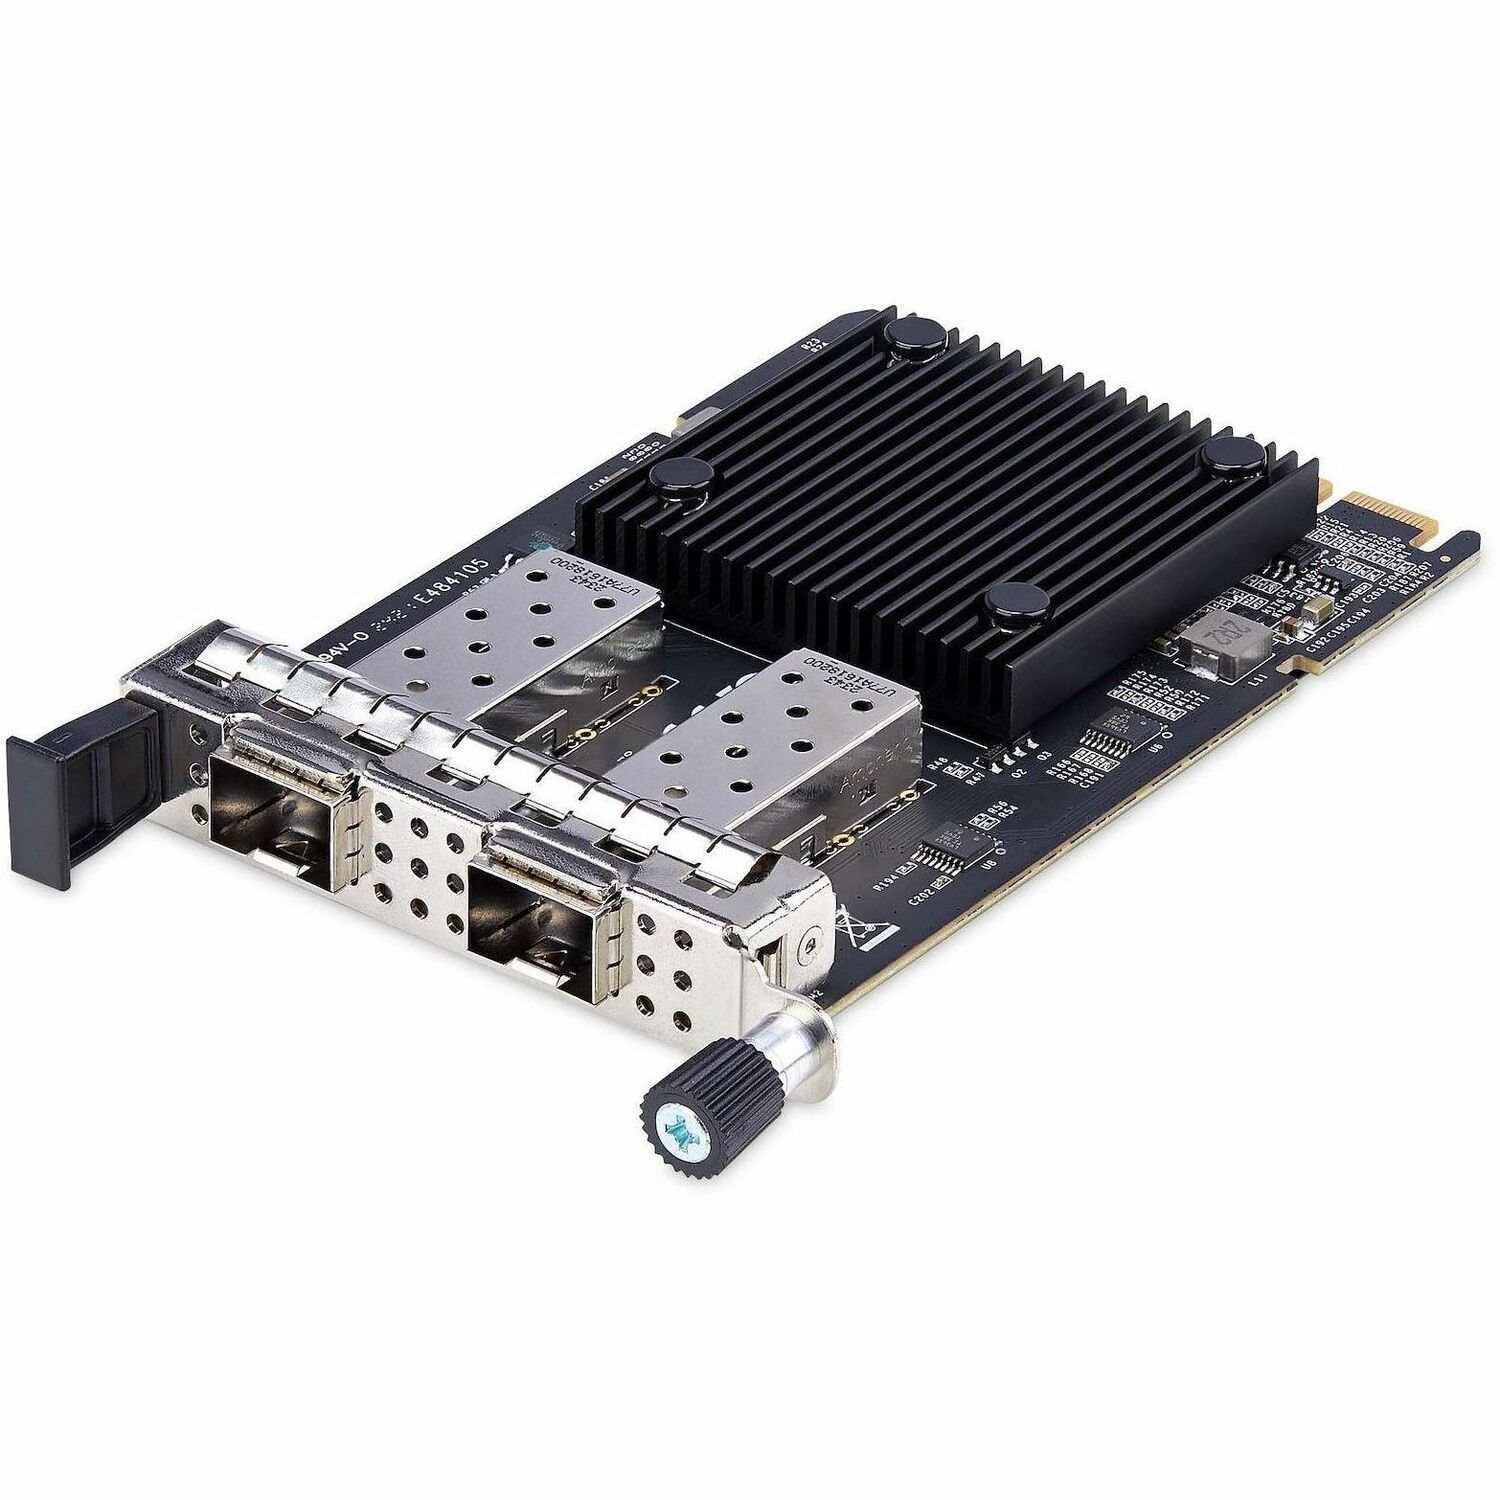 StarTech.com 10Gigabit Ethernet Card for Server - 10GBase-X, 10GBase-T, 10GBase-CR, 10GBase-SR, 10GBase-LR, 1000Base-T, 1000Base-SX, 1000Base-LX - SFP+ - Plug-in Card - Black